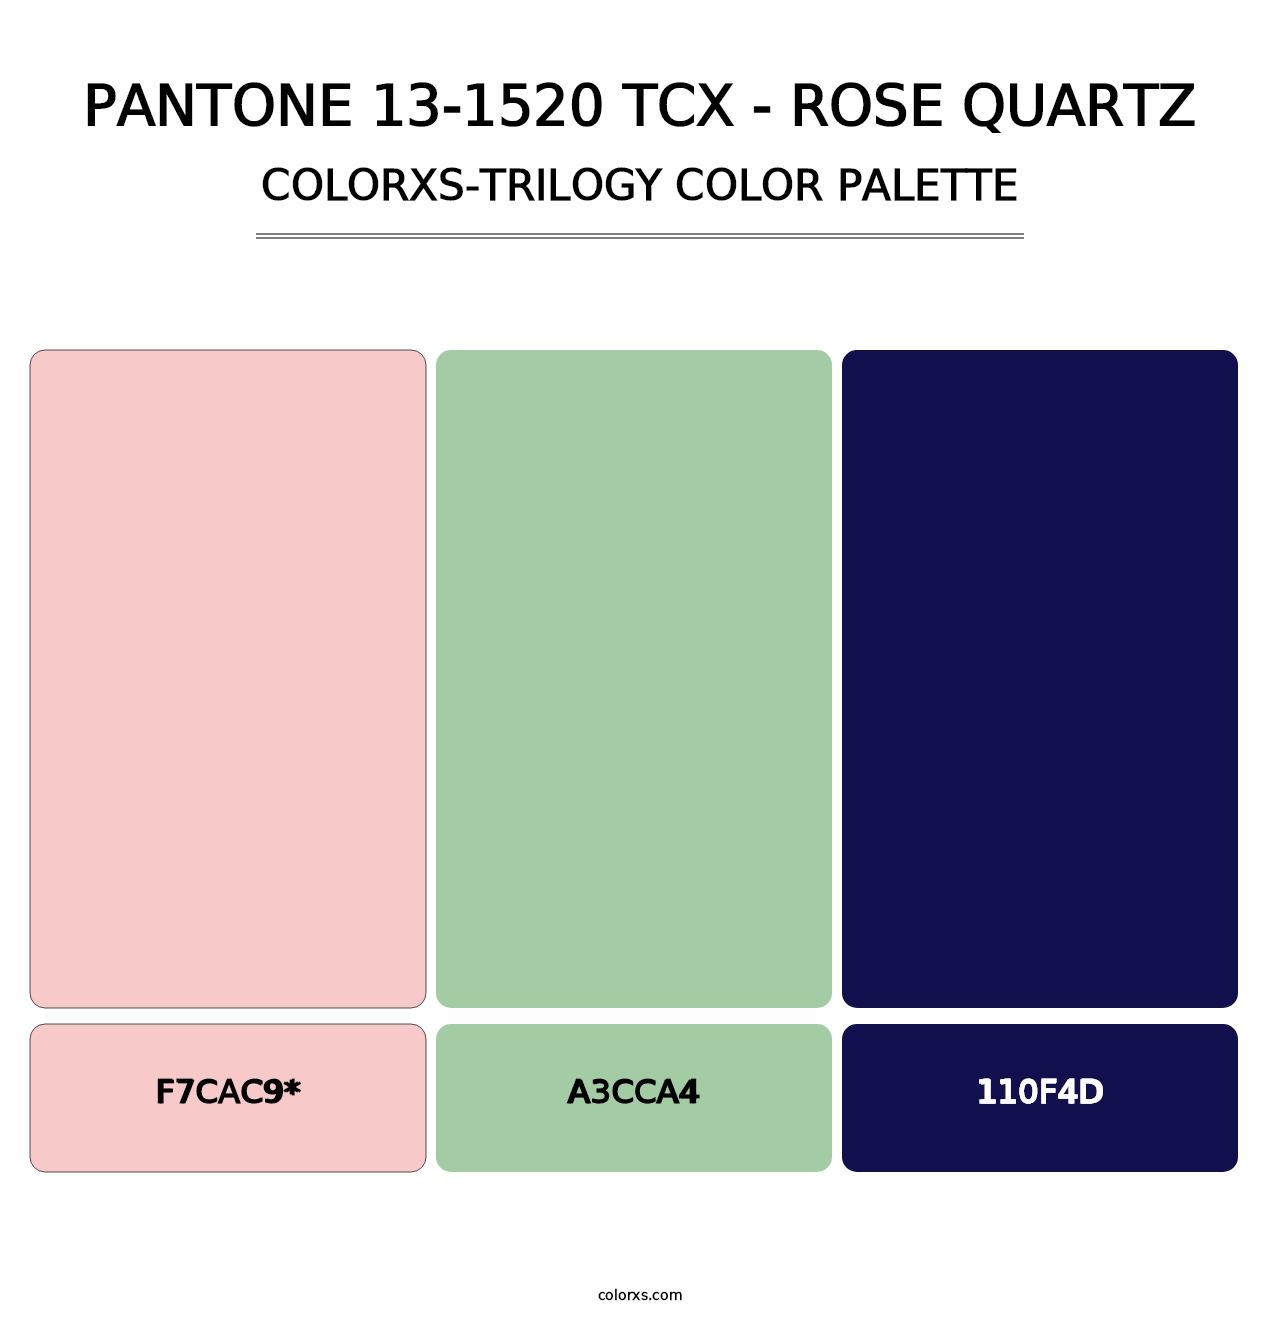 PANTONE 13-1520 TCX - Rose Quartz - Colorxs Trilogy Palette